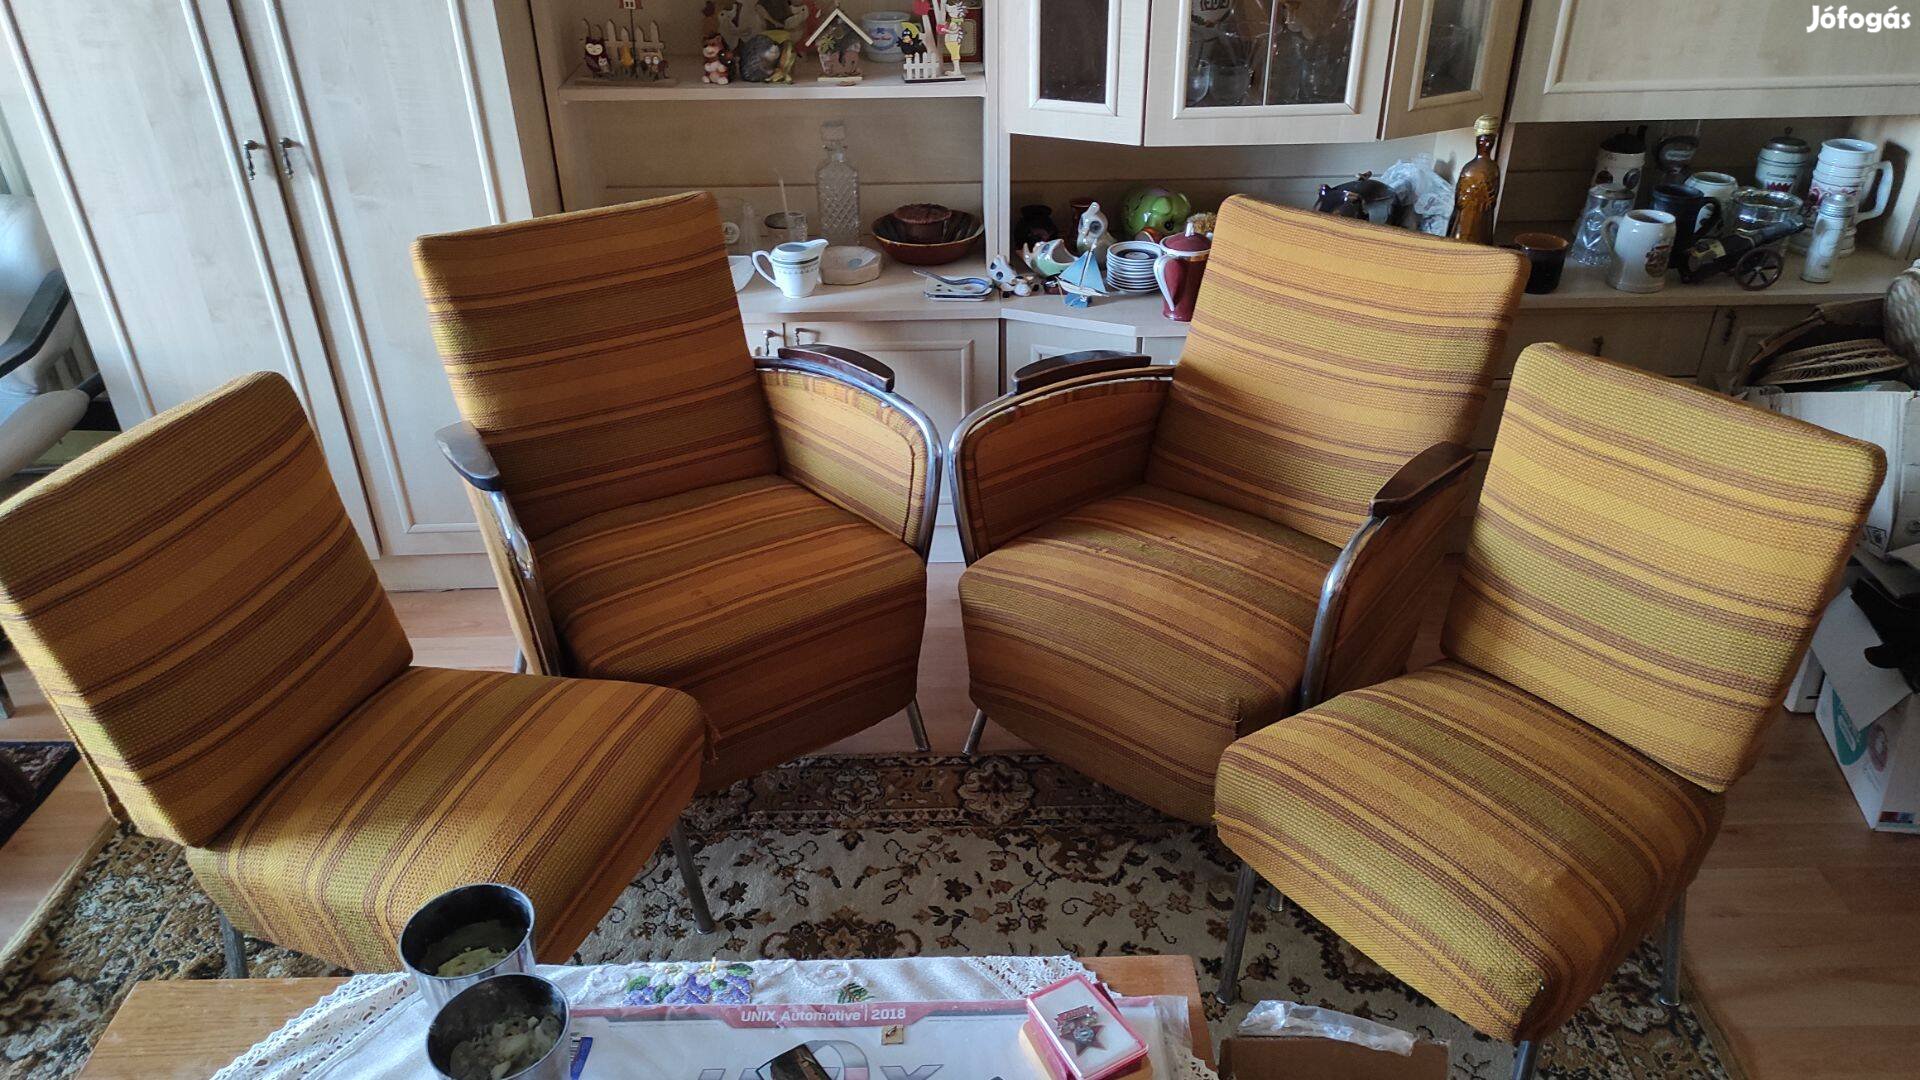 Retro régi acélvázas karosszék szék fotel garnitúra Peresztegi József